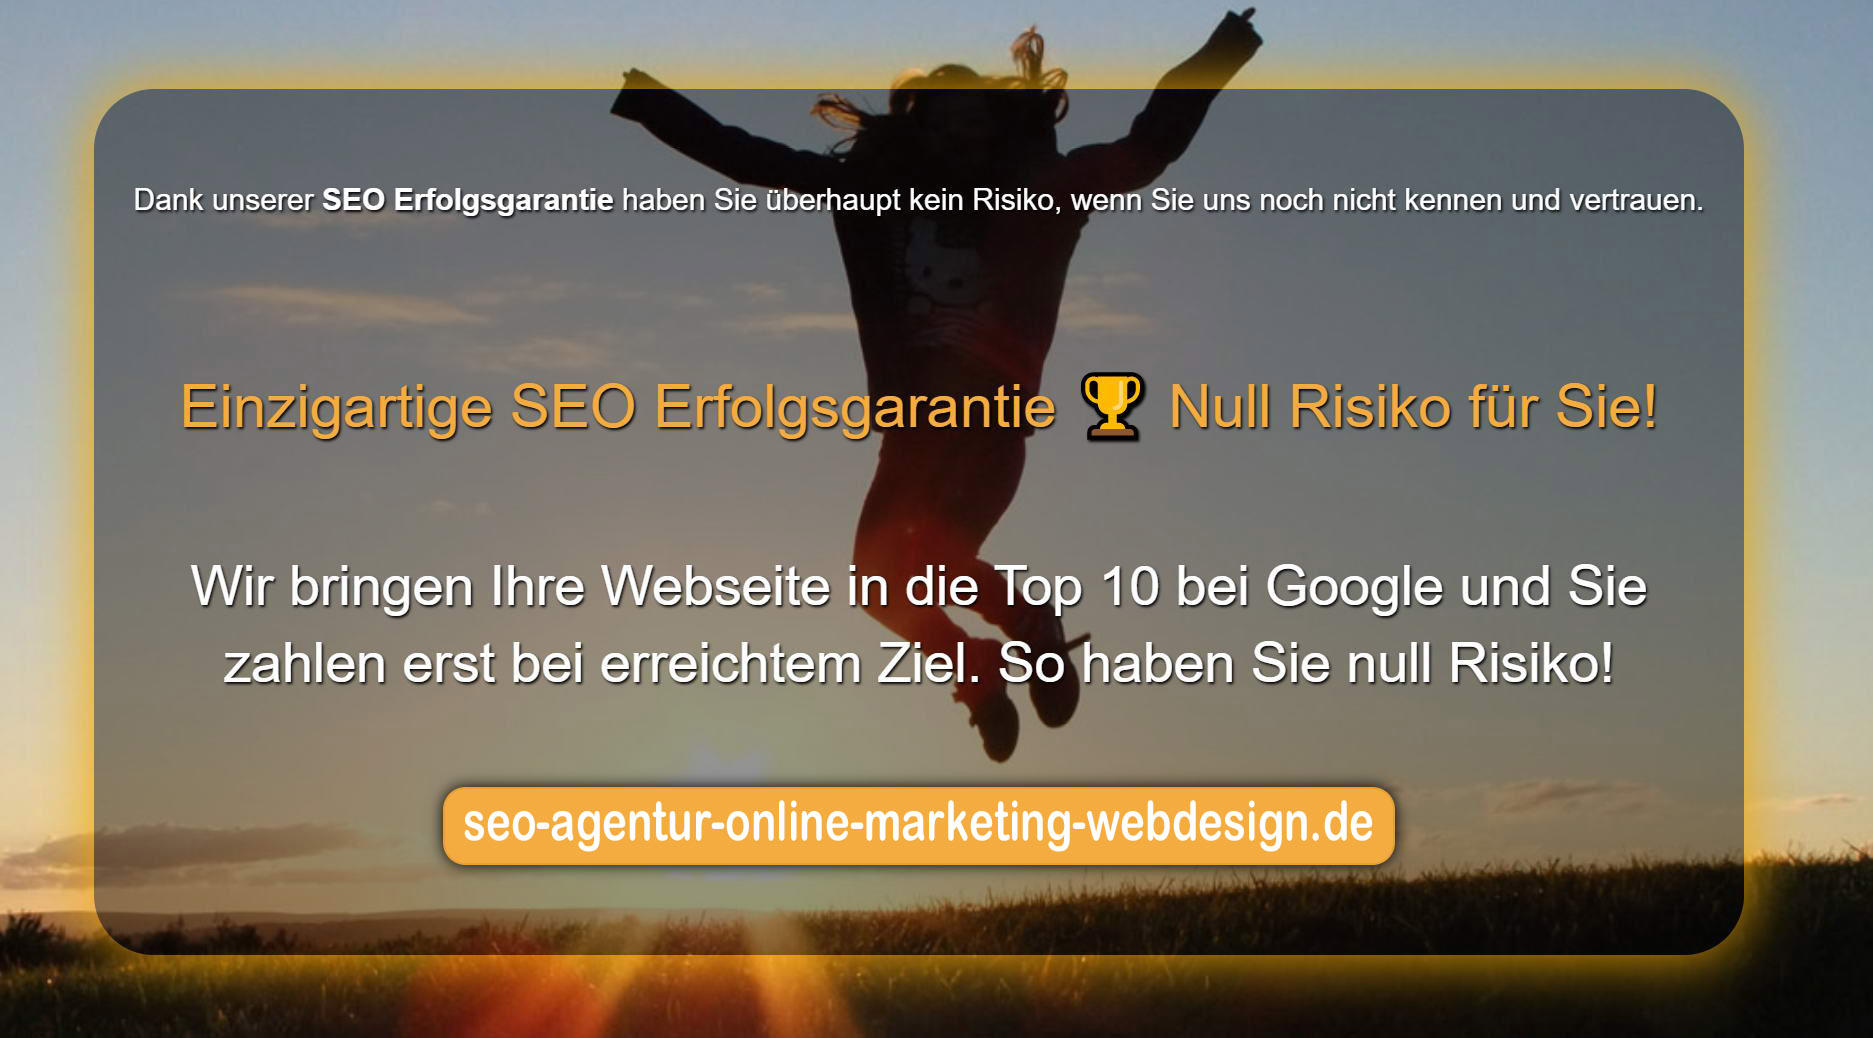 SEO Agentur Online Marketing Webdesign, Hannenstieg 45A in Hamburg